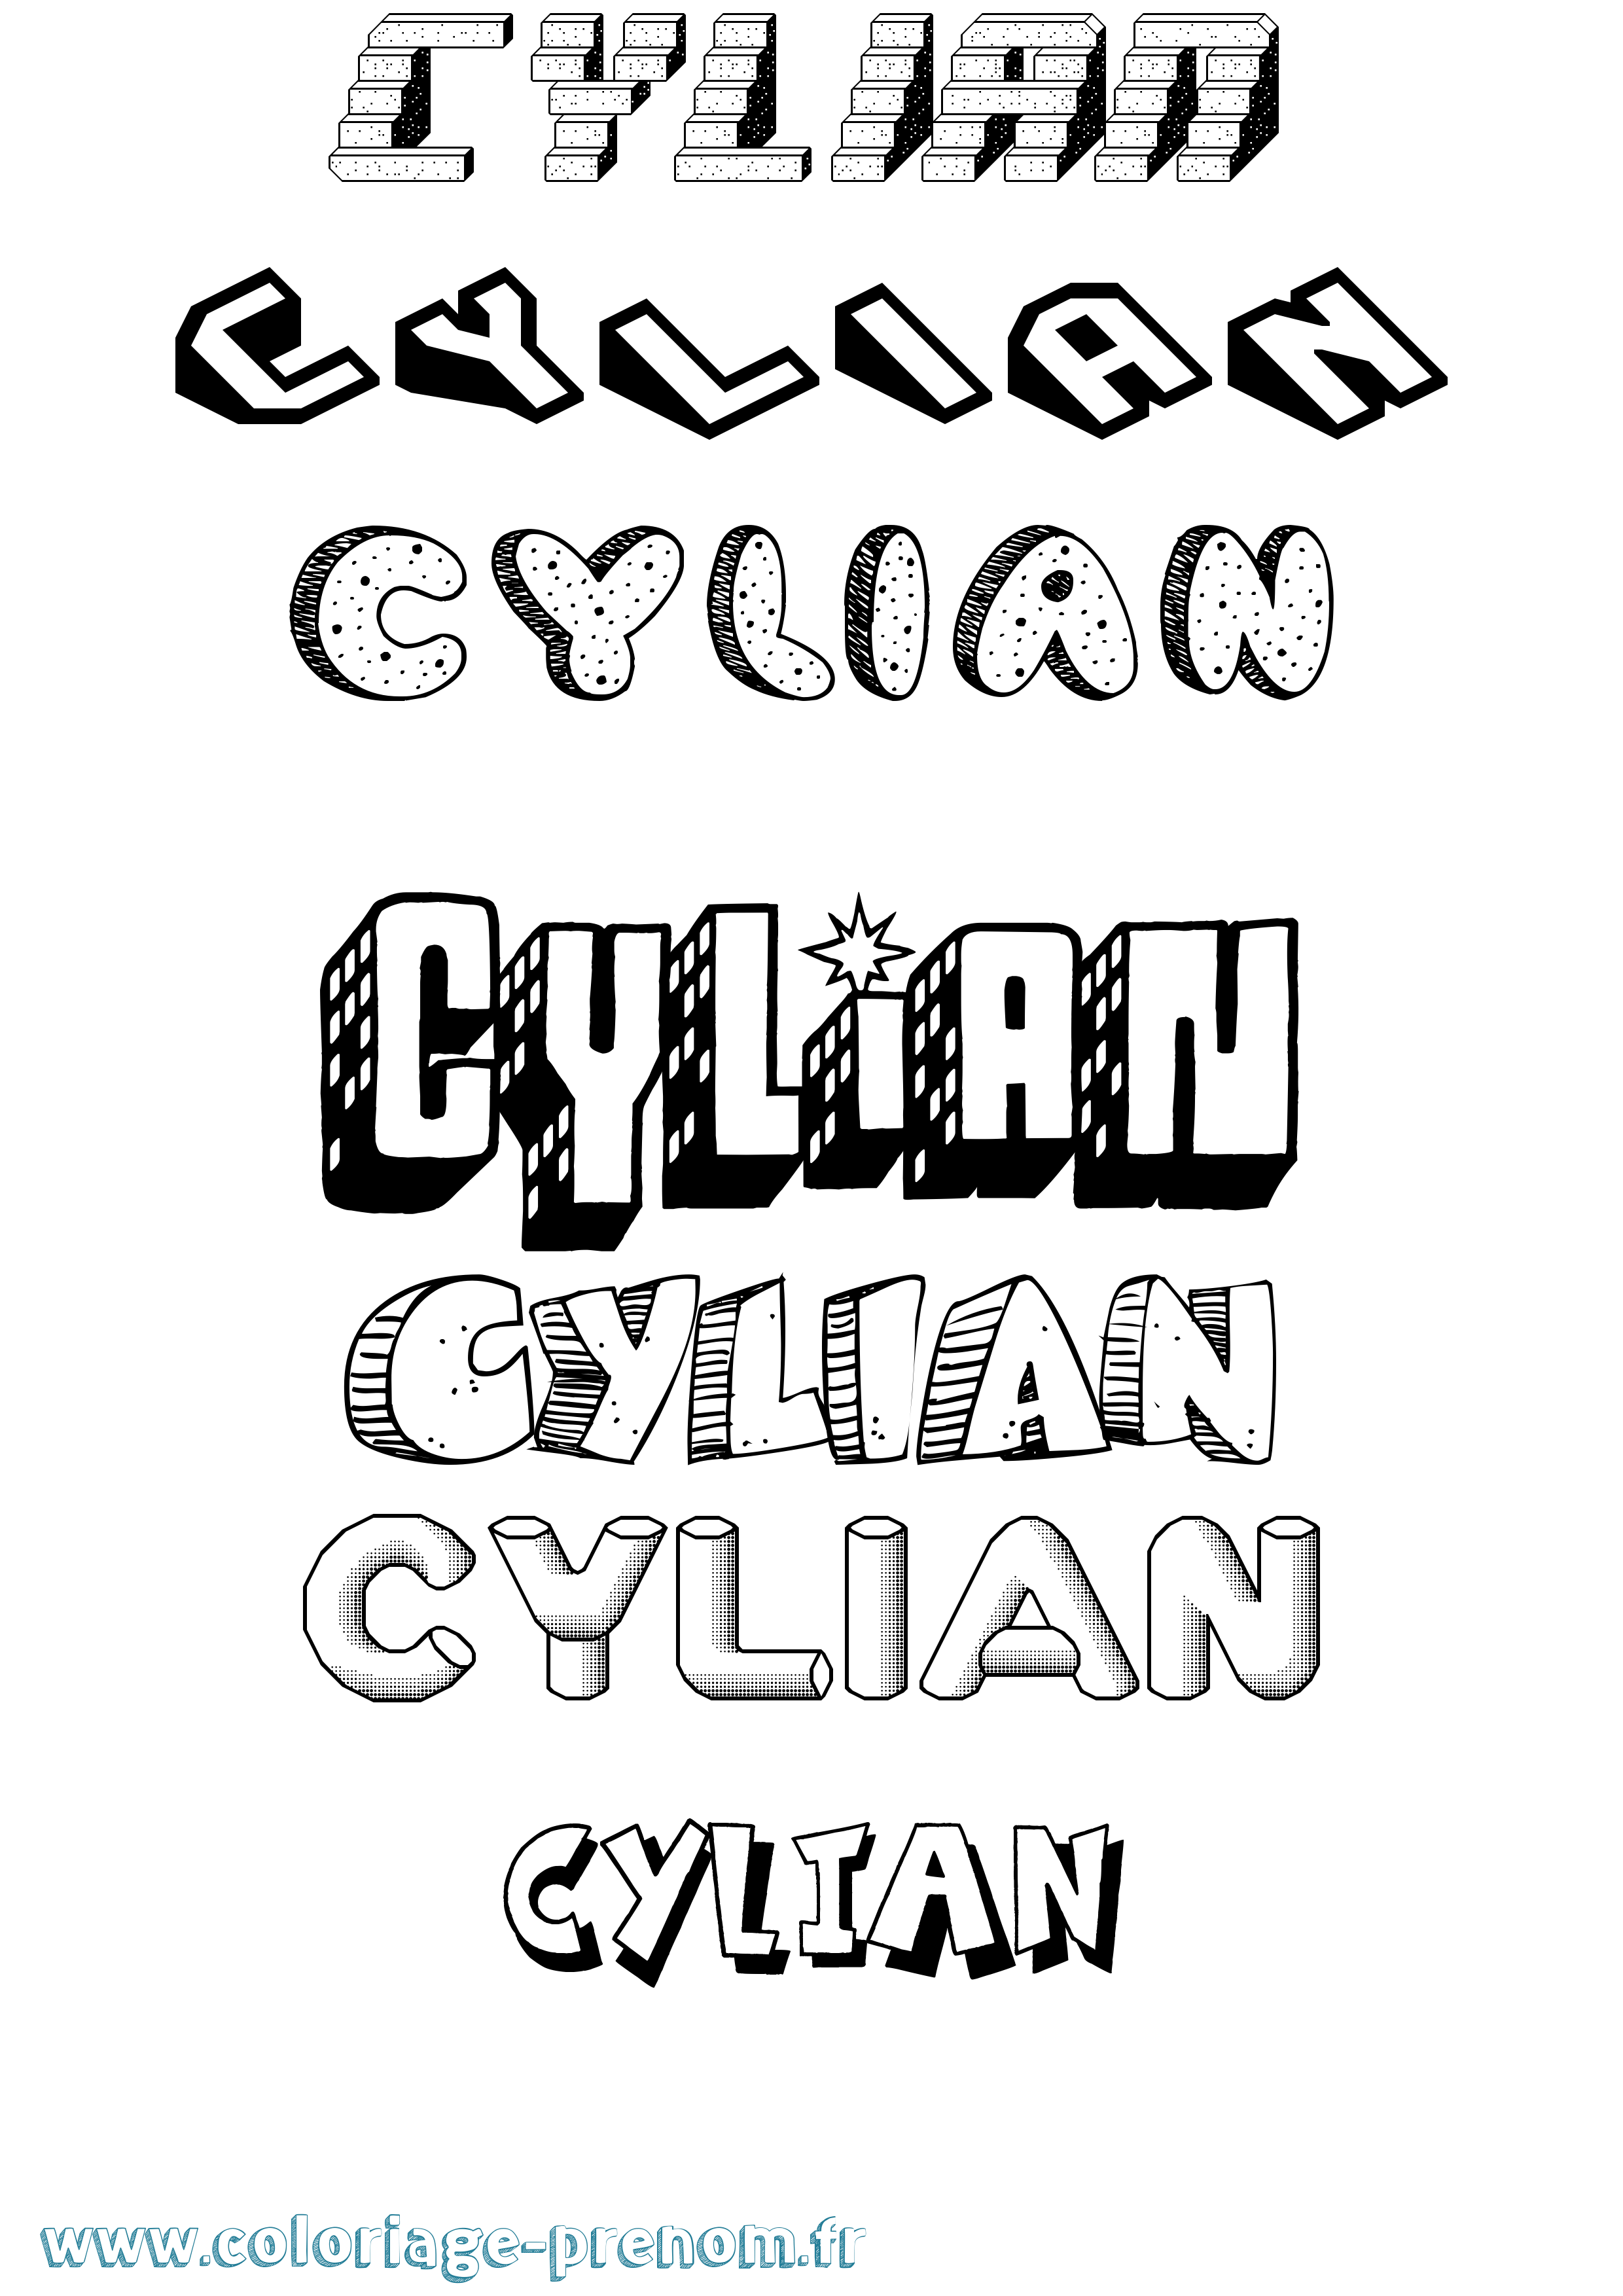 Coloriage prénom Cylian Effet 3D